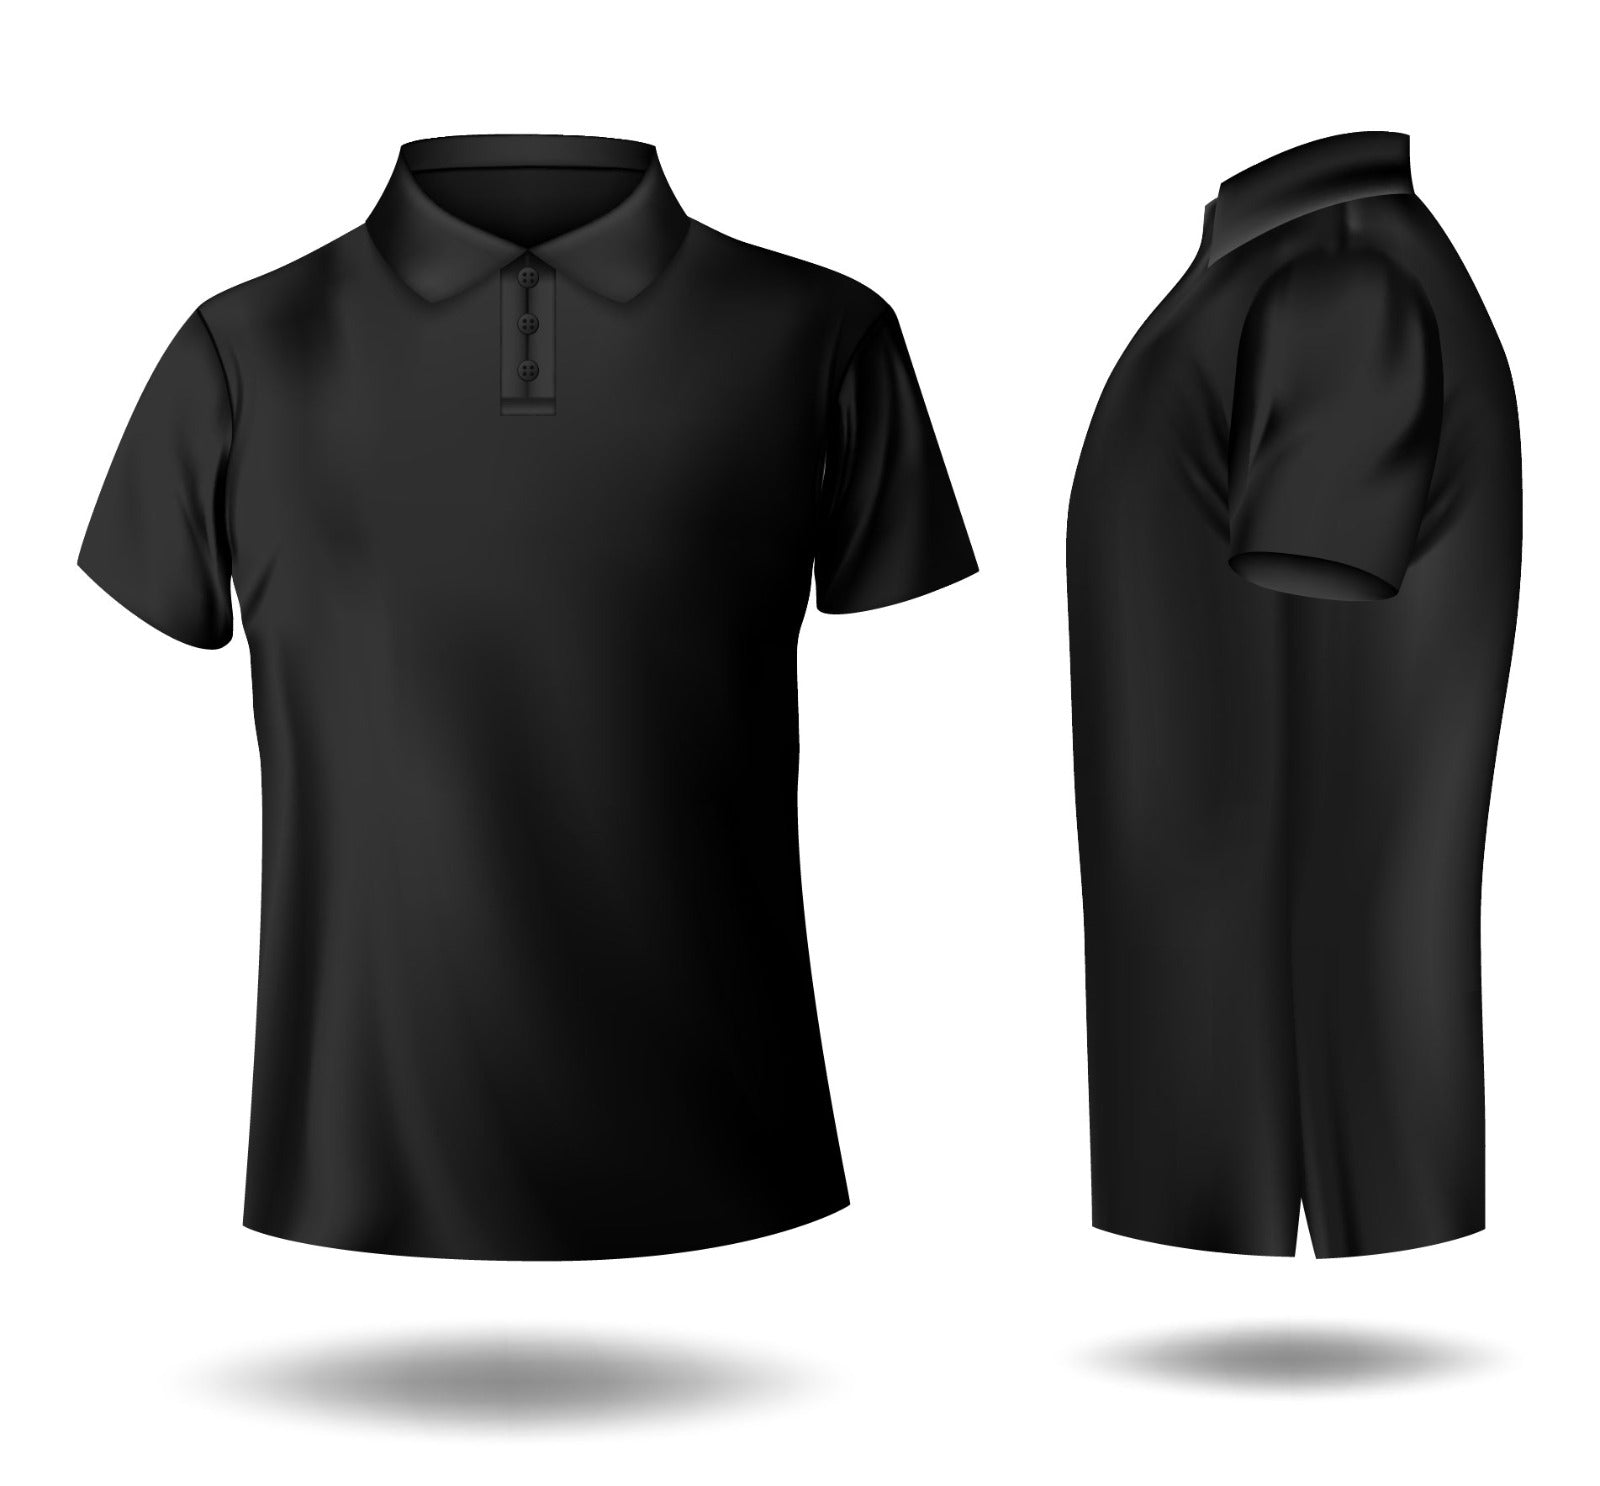 Black polo shirt for men